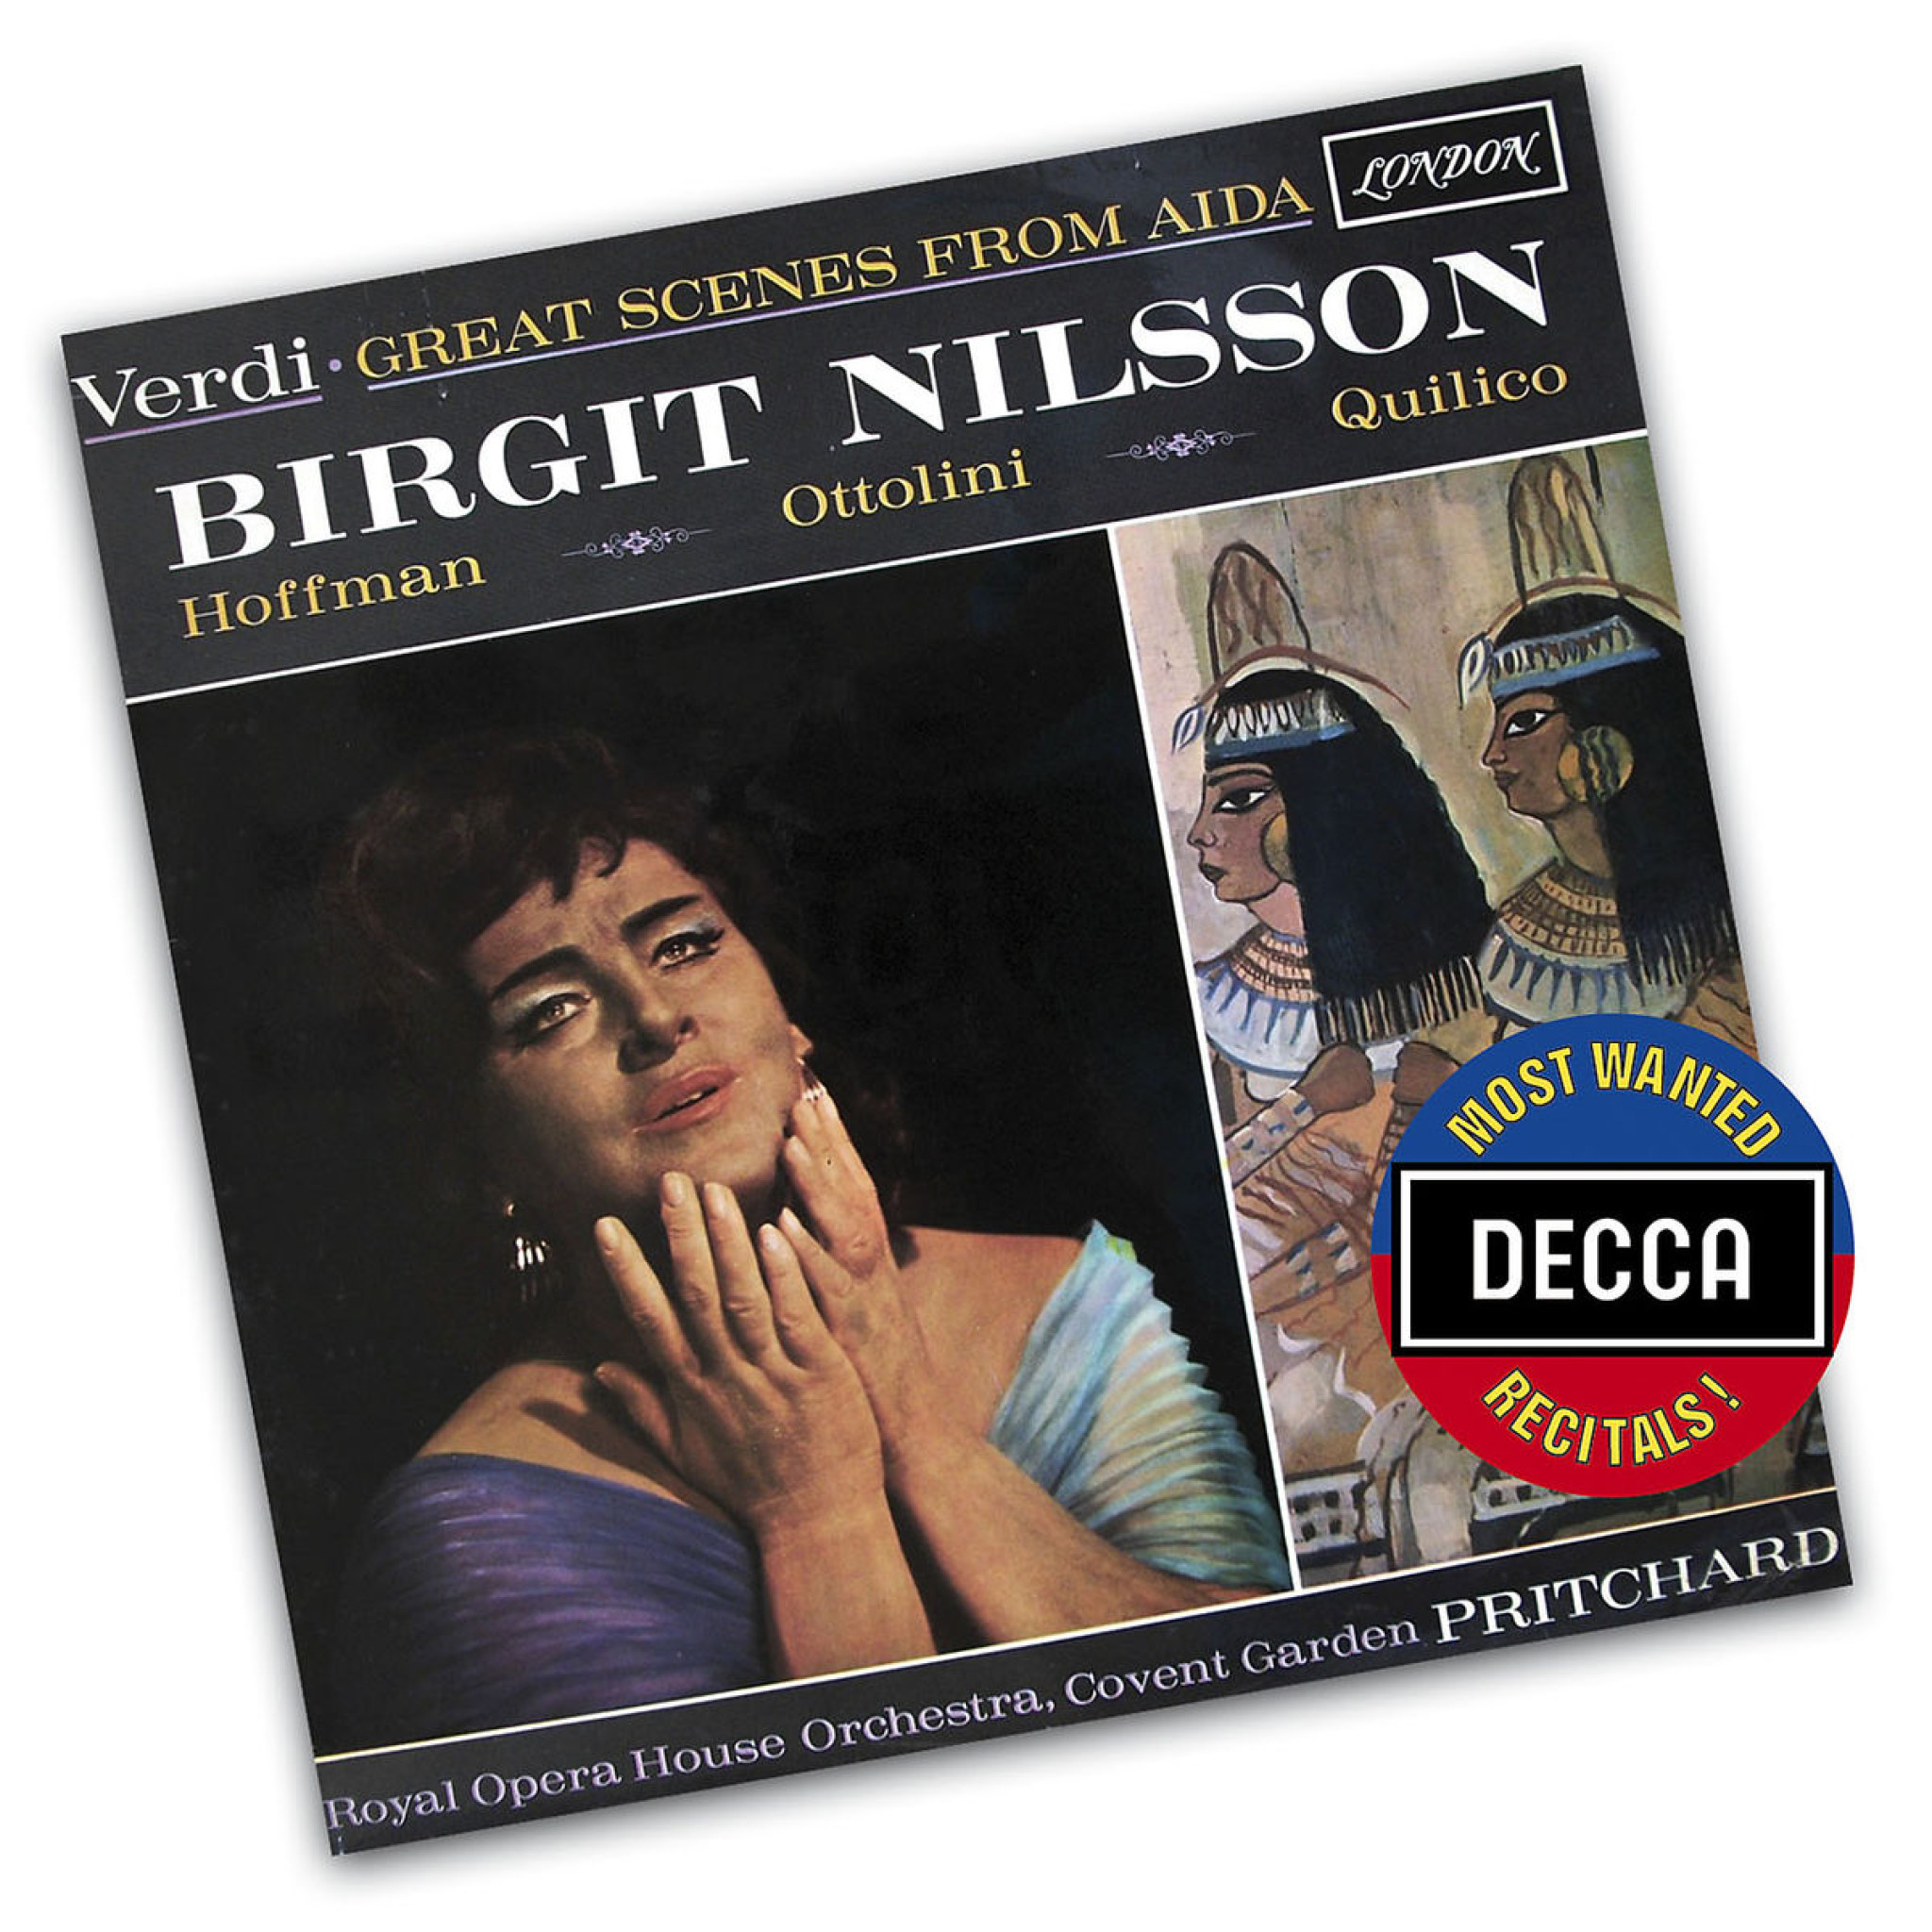 BIRGIT NILSSON